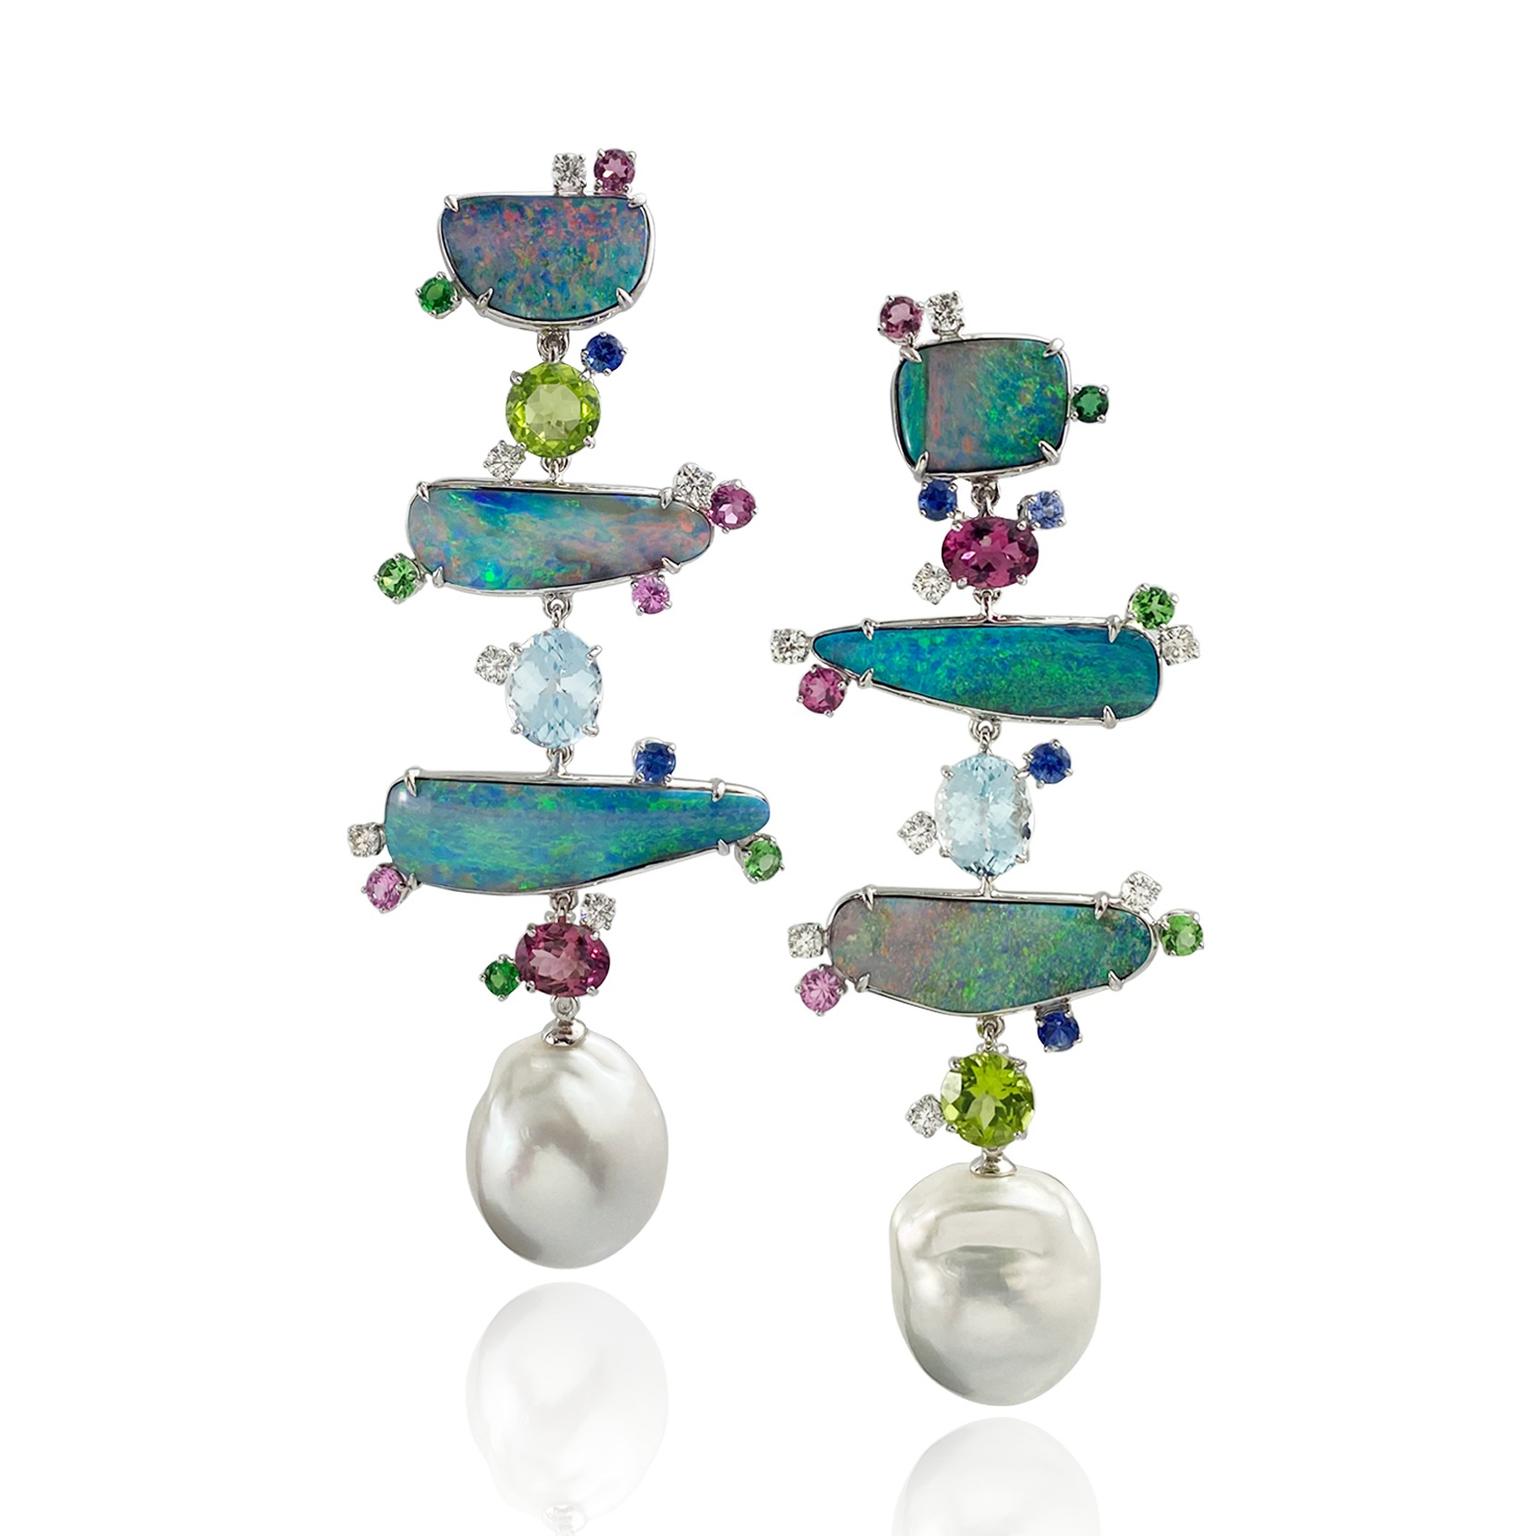 'Totem' Opal earrings from Margot McKinney 